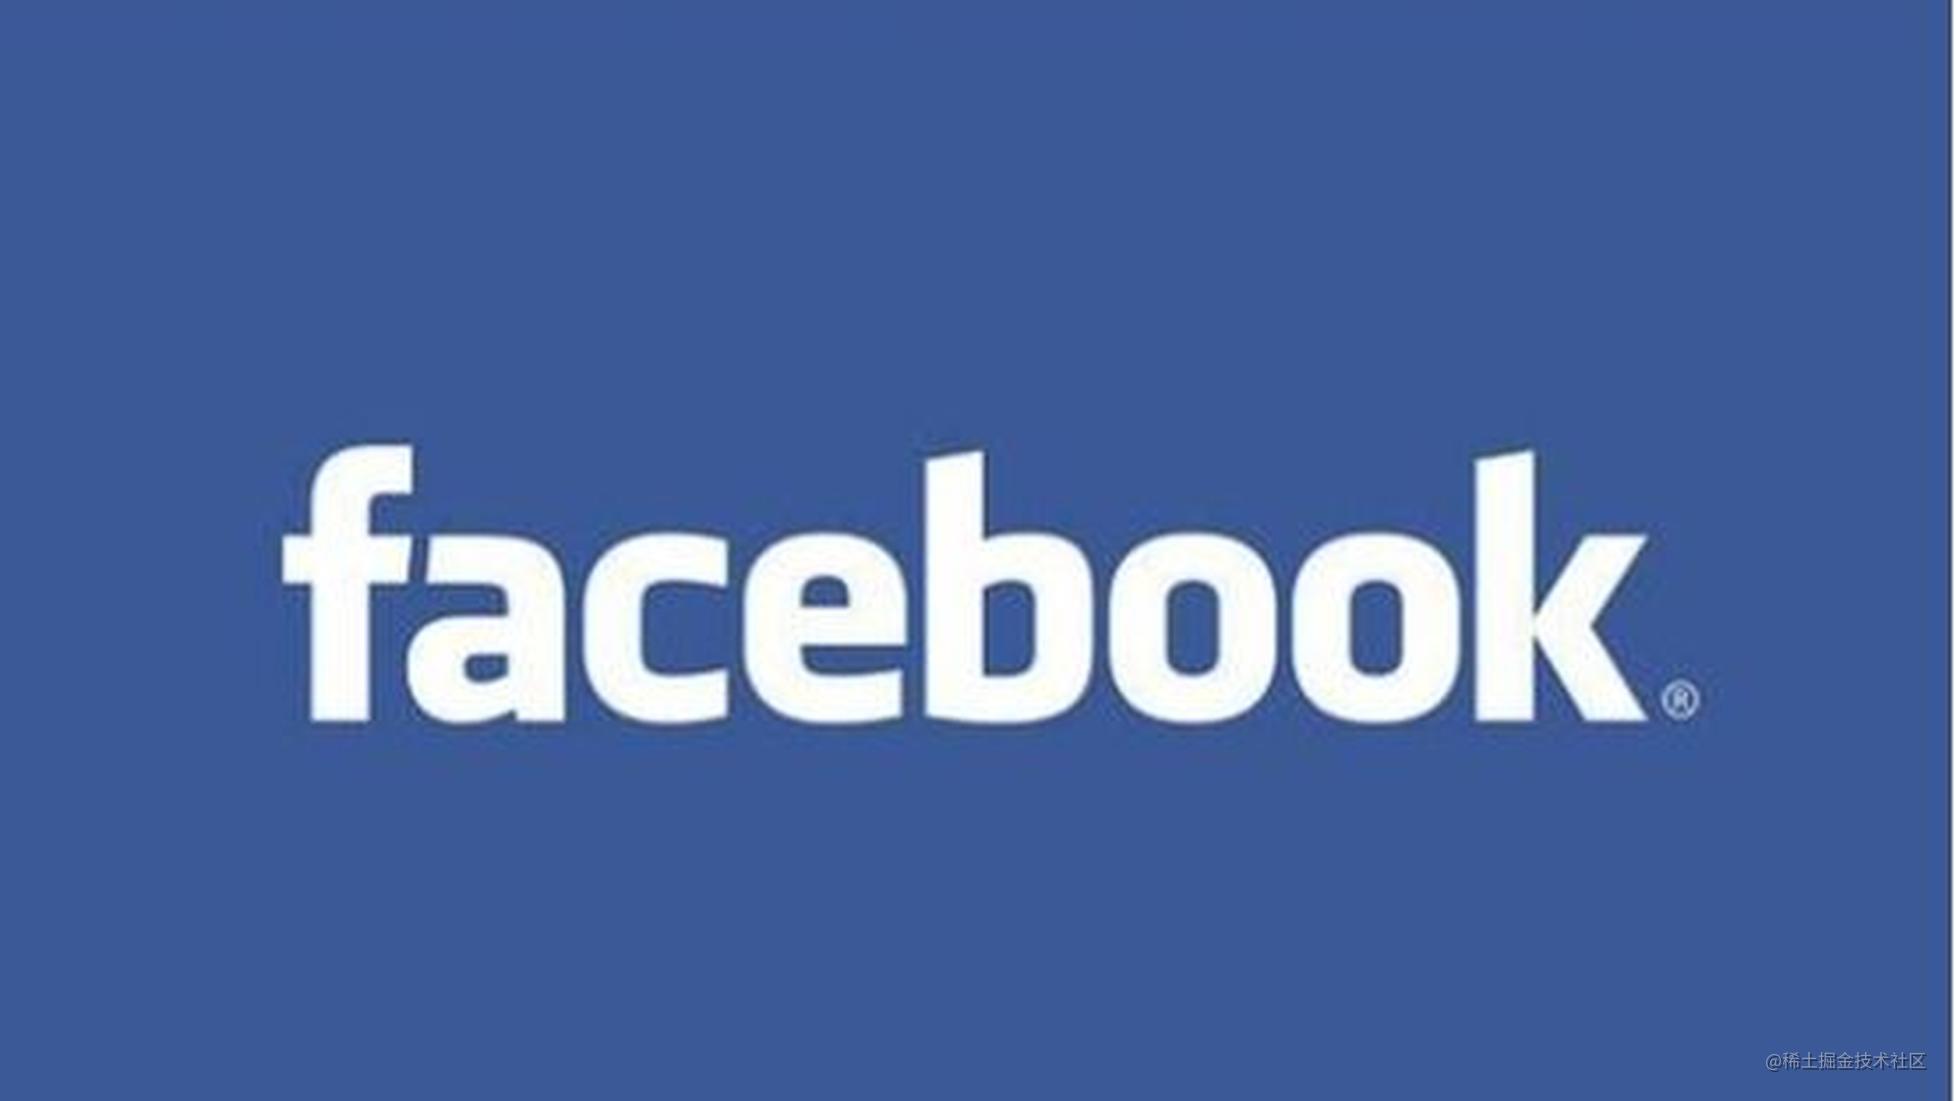 逆袭 Flutter? Facebook 发布全新跨平台引擎 Hermes！